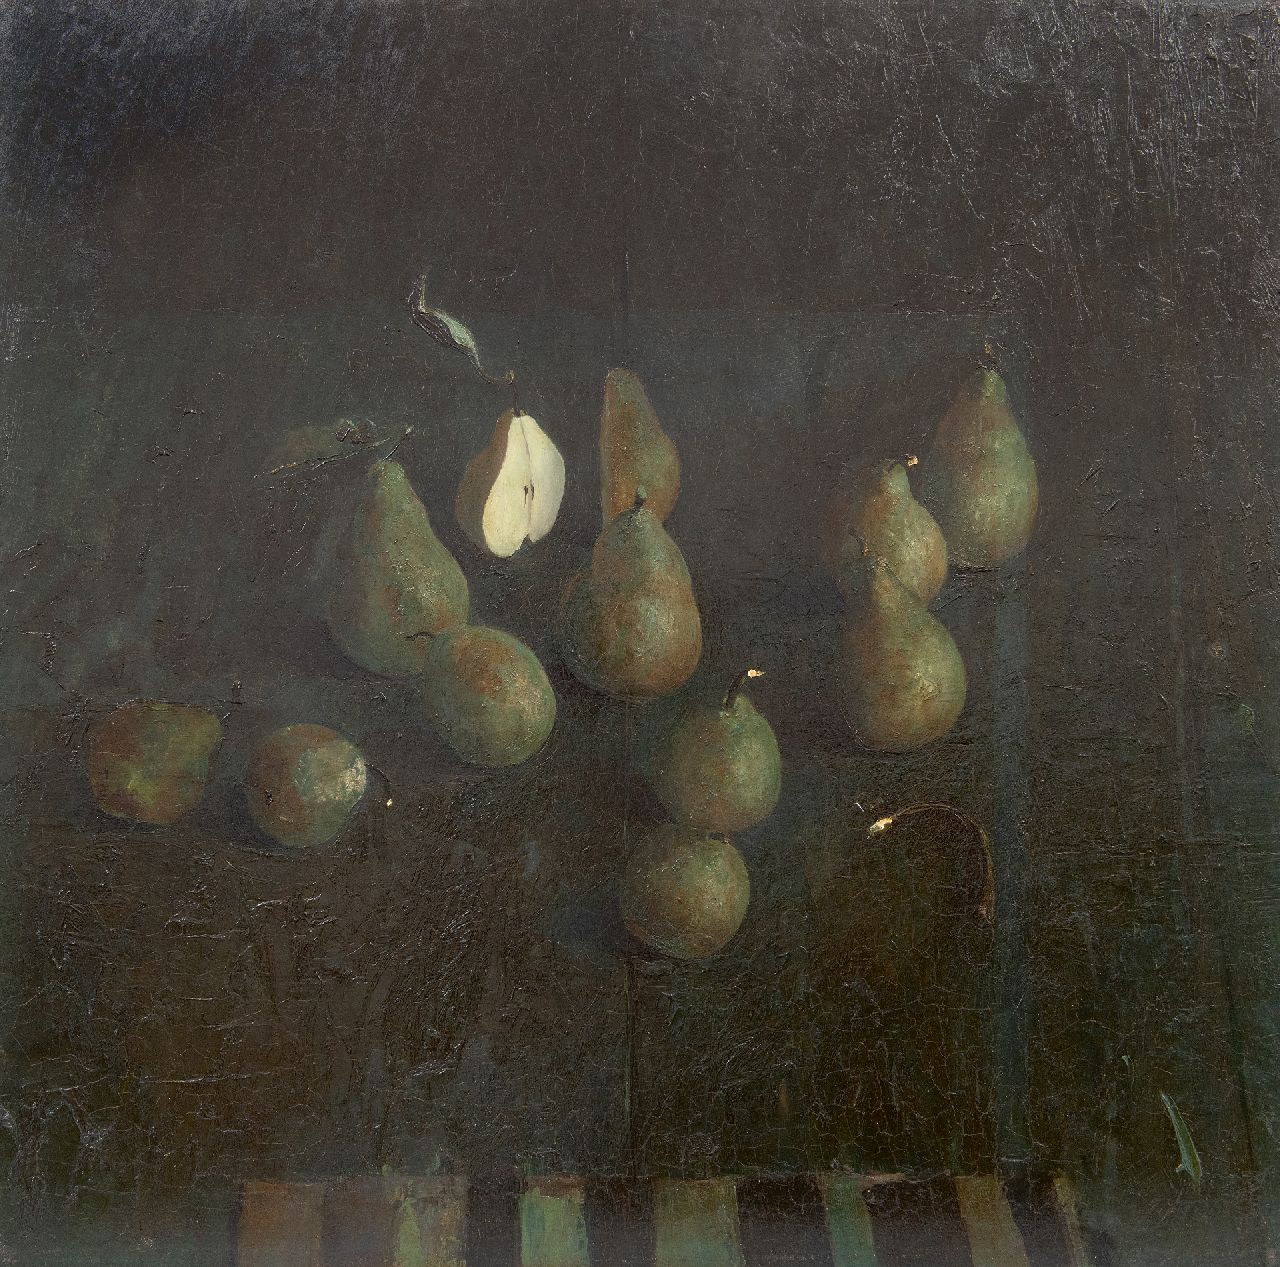 Kooi J. van der | Jan van der Kooi | Schilderijen te koop aangeboden | Peren, olieverf op board 59,5 x 60,0 cm, gesigneerd middenonder en gedateerd 1985, zonder lijst